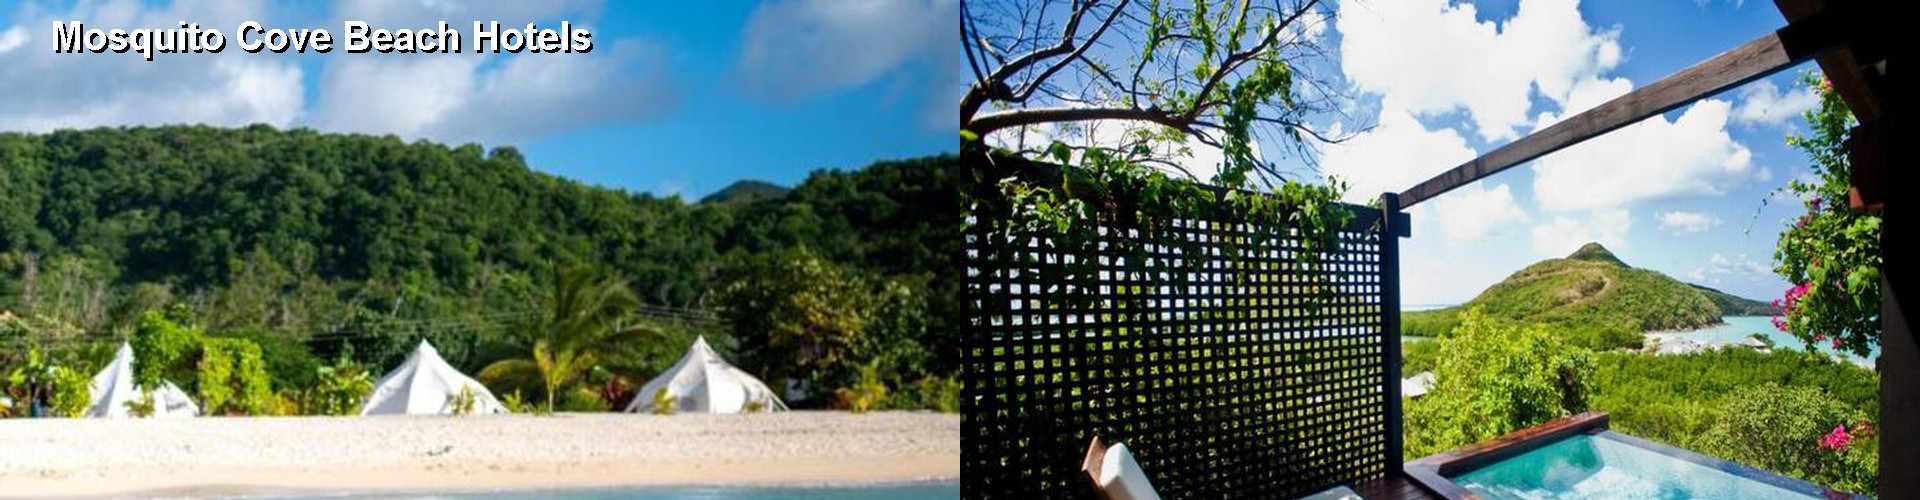 5 Best Hotels near Mosquito Cove Beach